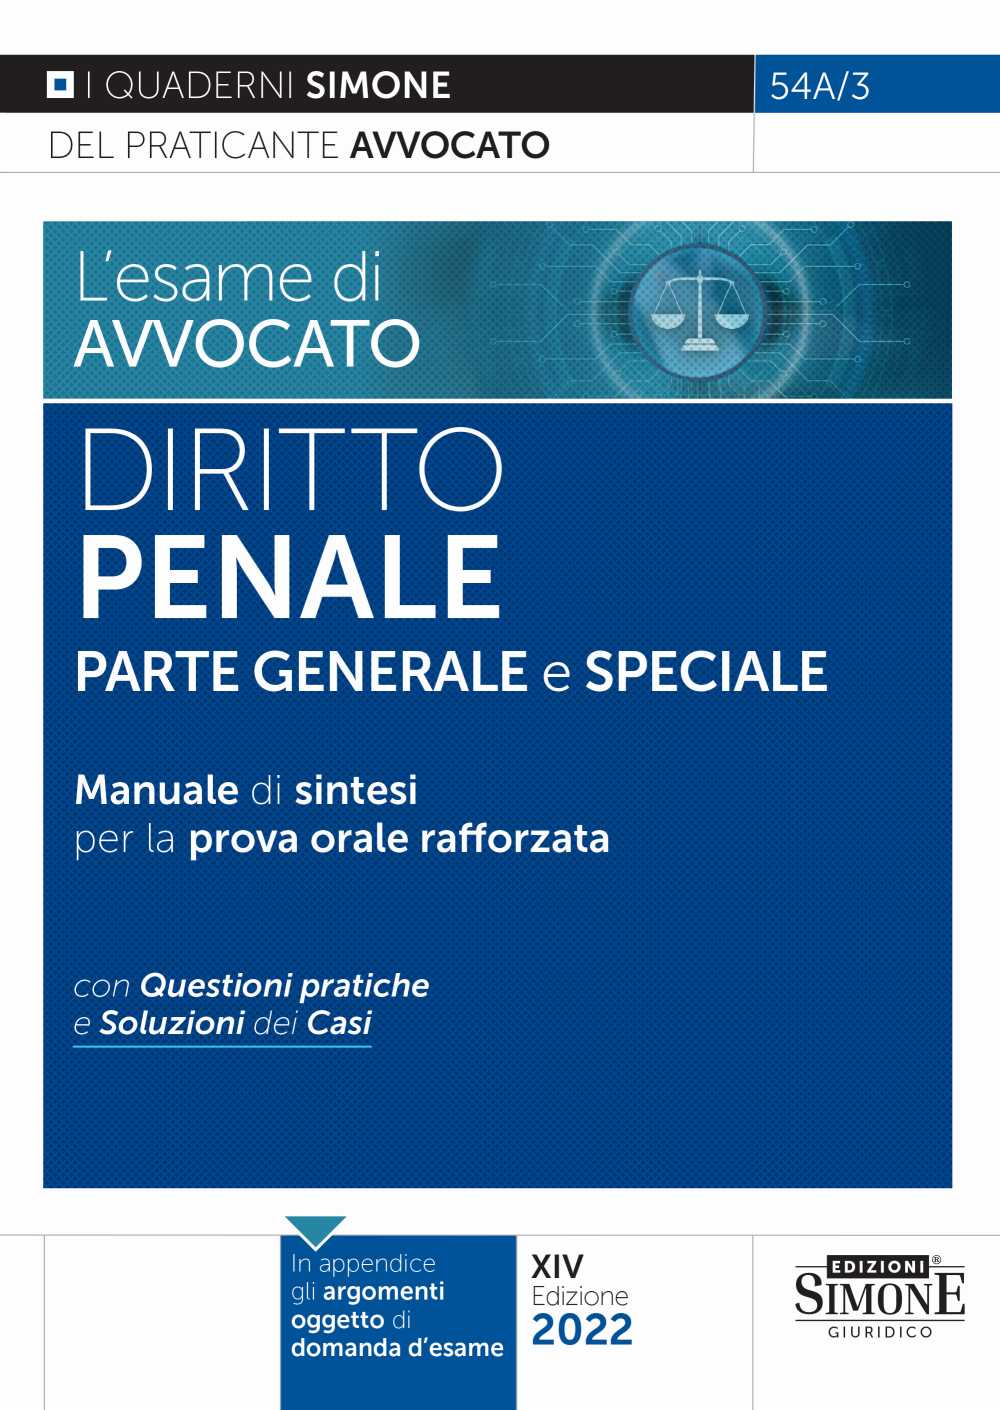 [Ebook] L'esame di avvocato - Diritto Penale Parte generale e speciale - Manuale di sintesi per la prova orale rafforzata